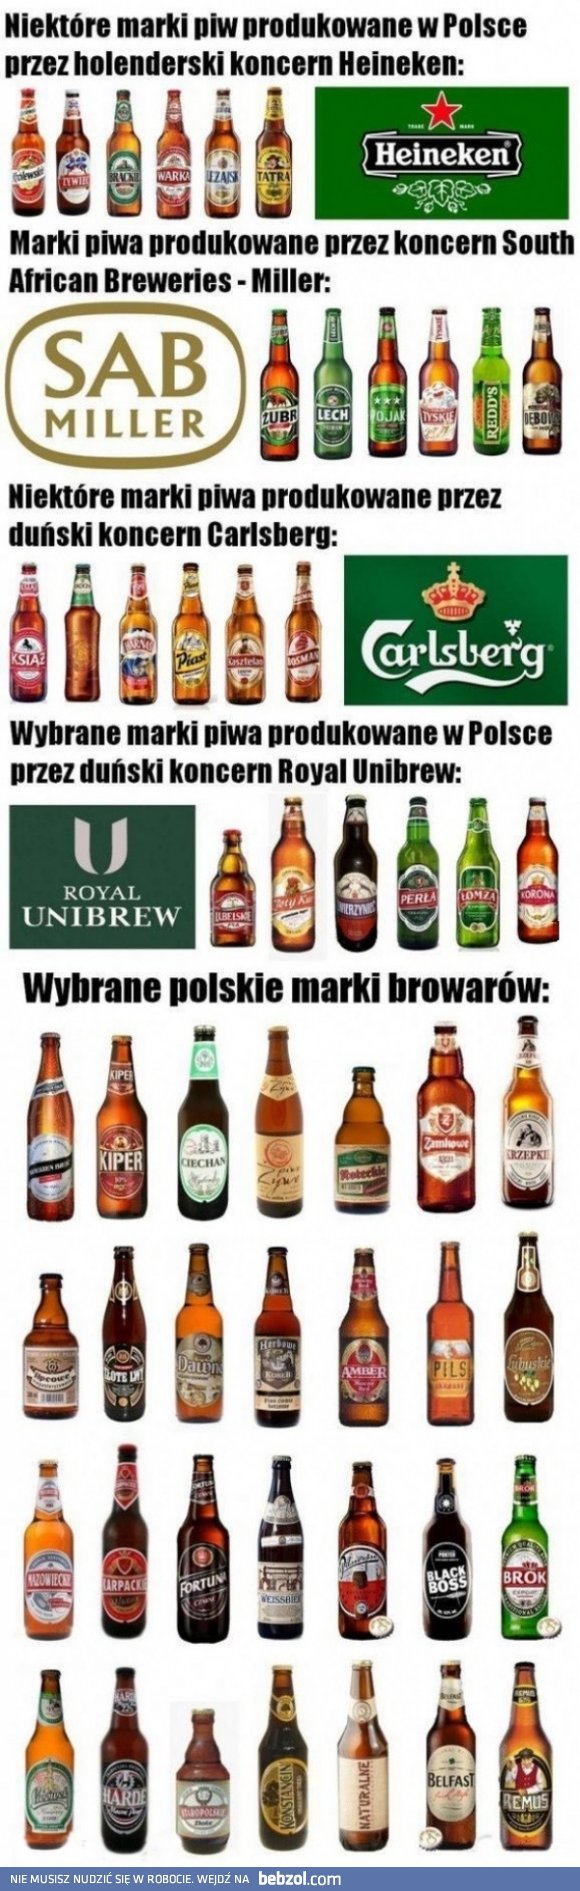 Sprawdź, czy pijesz polskie piwo